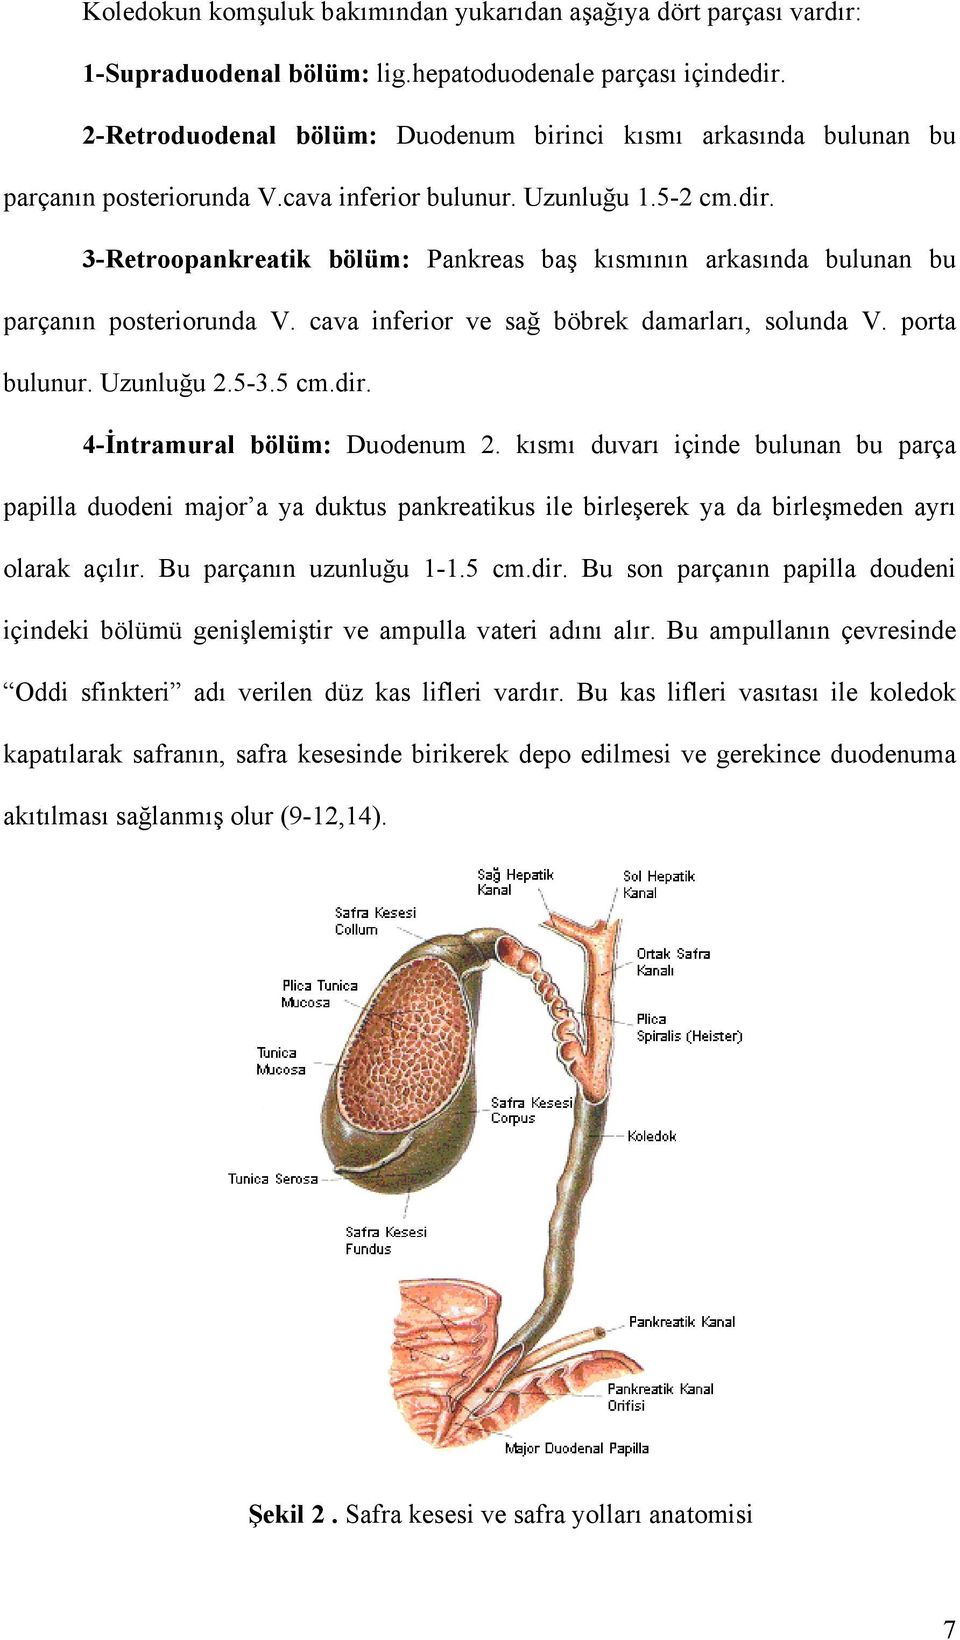 3-Retroopankreatik bölüm: Pankreas baş kısmının arkasında bulunan bu parçanın posteriorunda V. cava inferior ve sağ böbrek damarları, solunda V. porta bulunur. Uzunluğu 2.5-3.5 cm.dir.